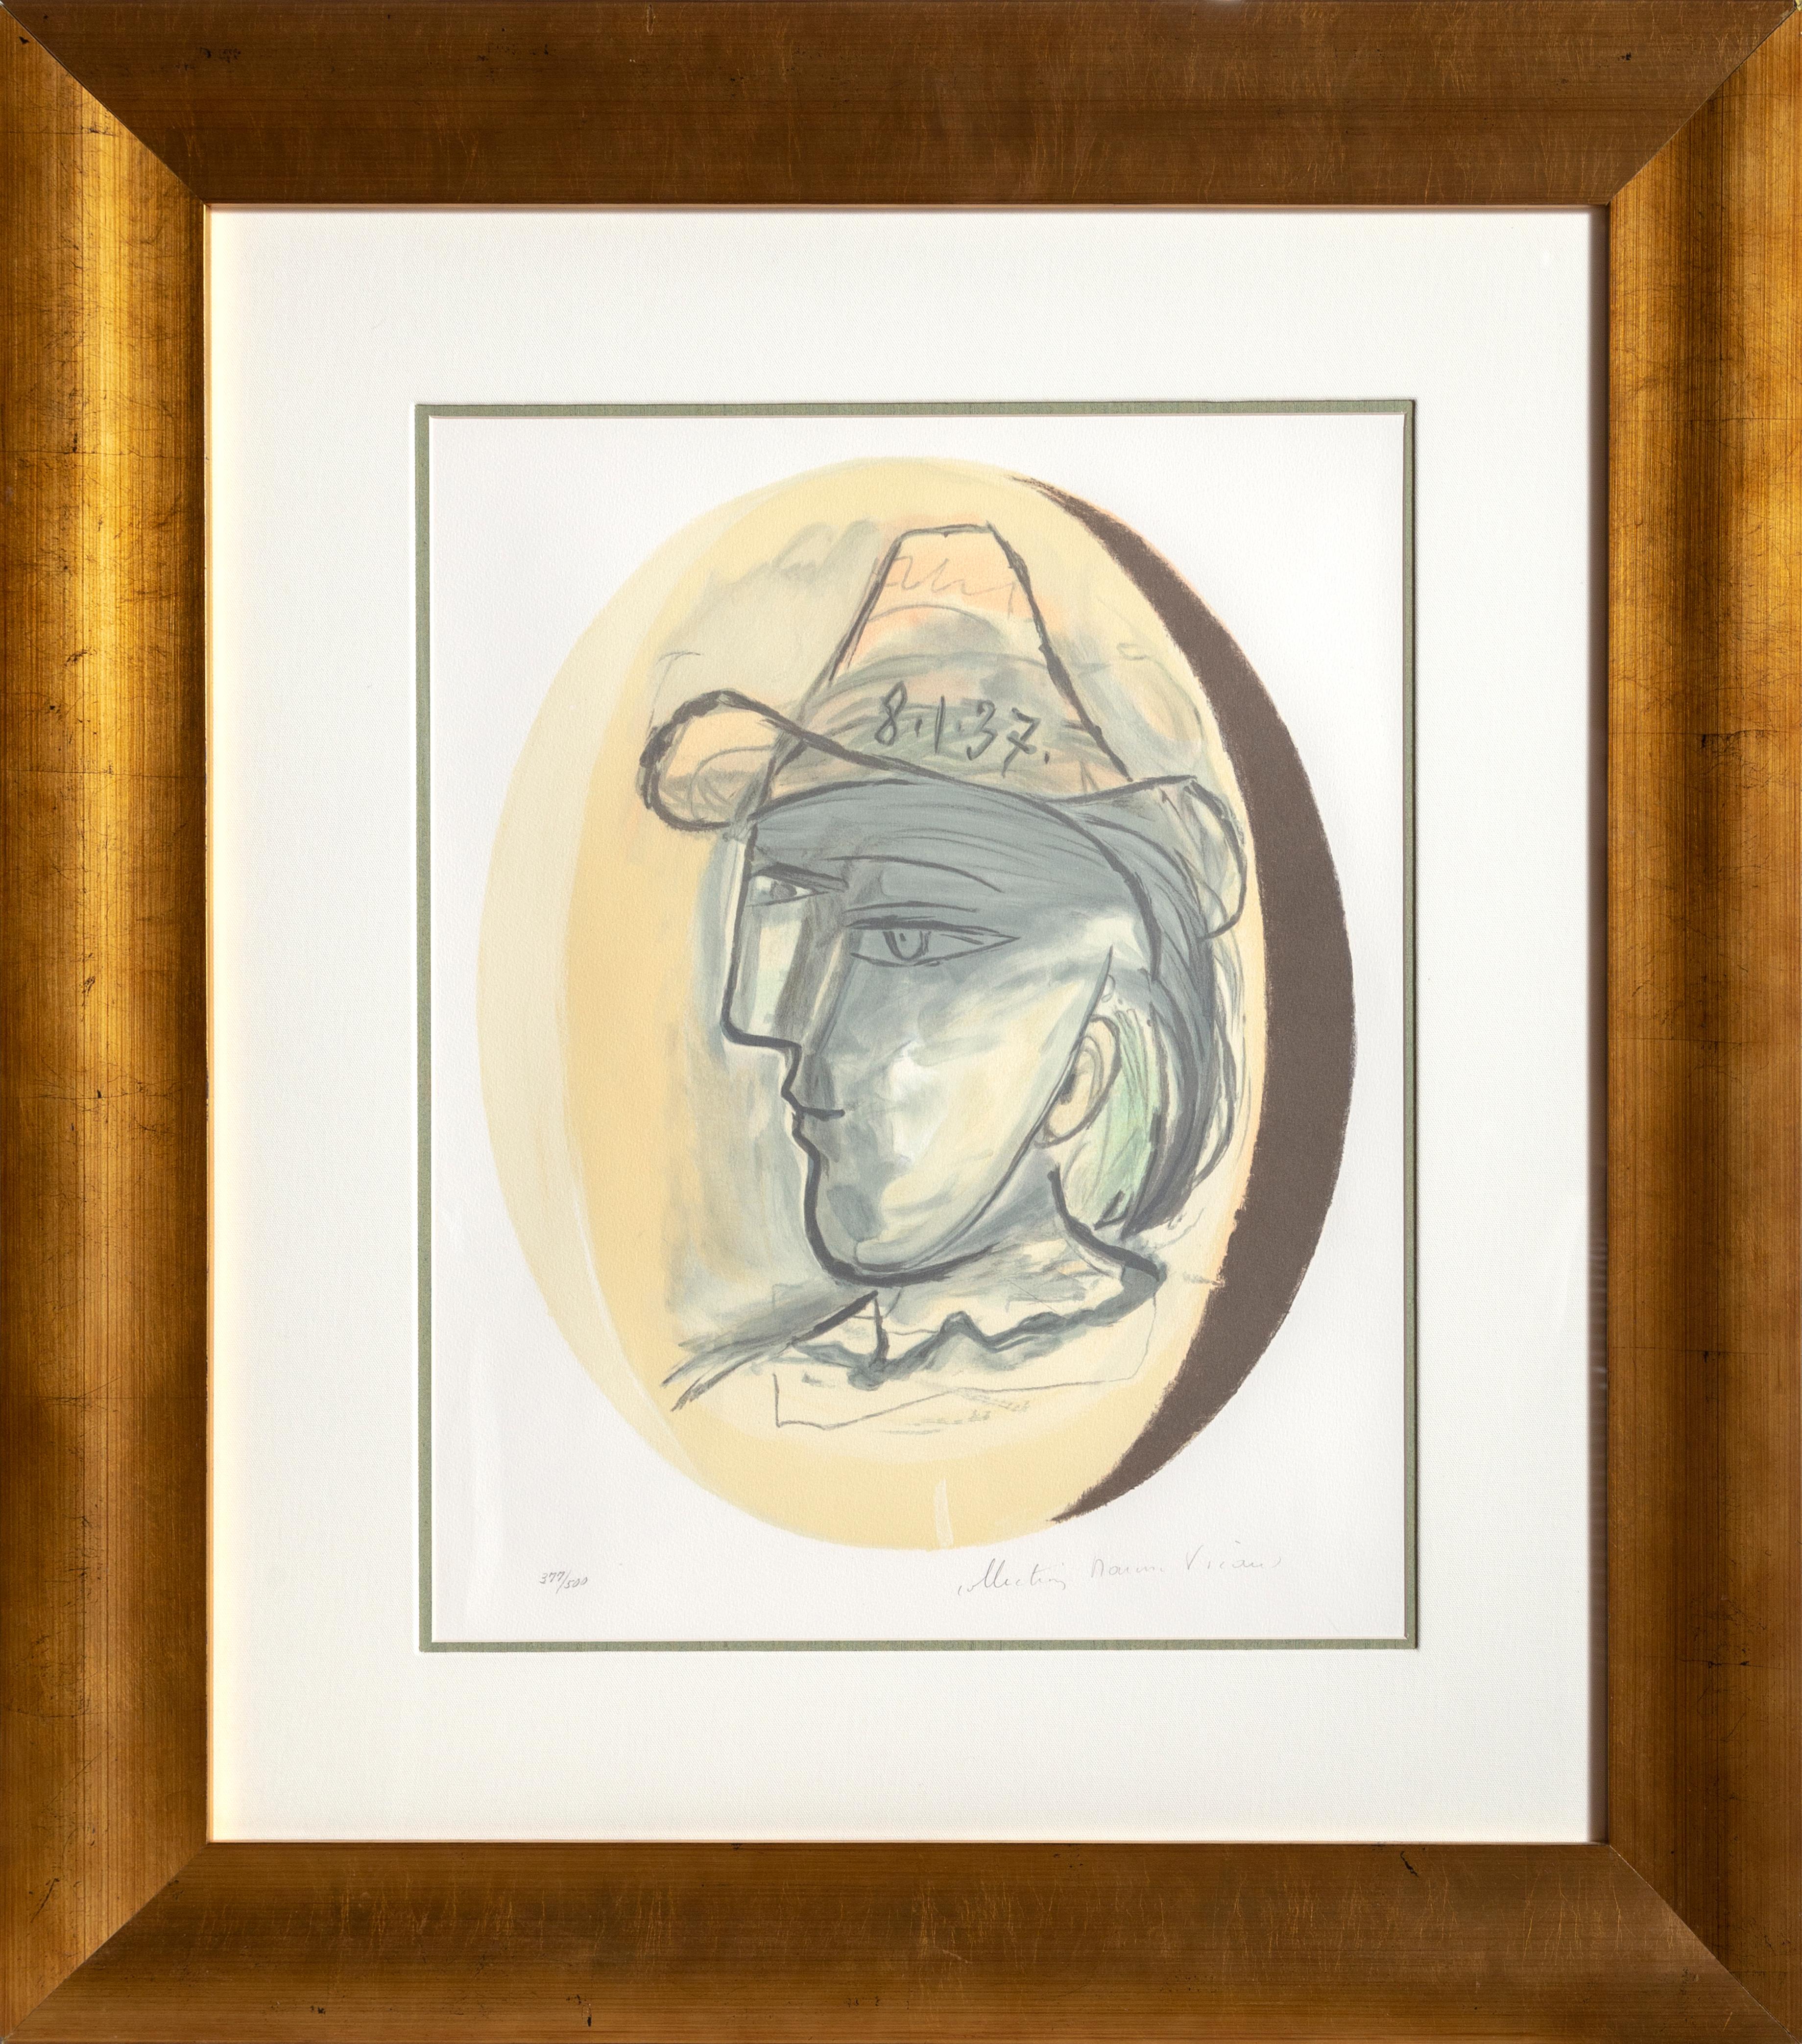 Lithographie de la Collection Salsa de Marina Picasso d'après le tableau "Tete" de Pablo Picasso.  La peinture originale a été achevée en 1937. Dans les années 1970, après la mort de Picasso, Marina Picasso, sa petite-fille, a autorisé la création